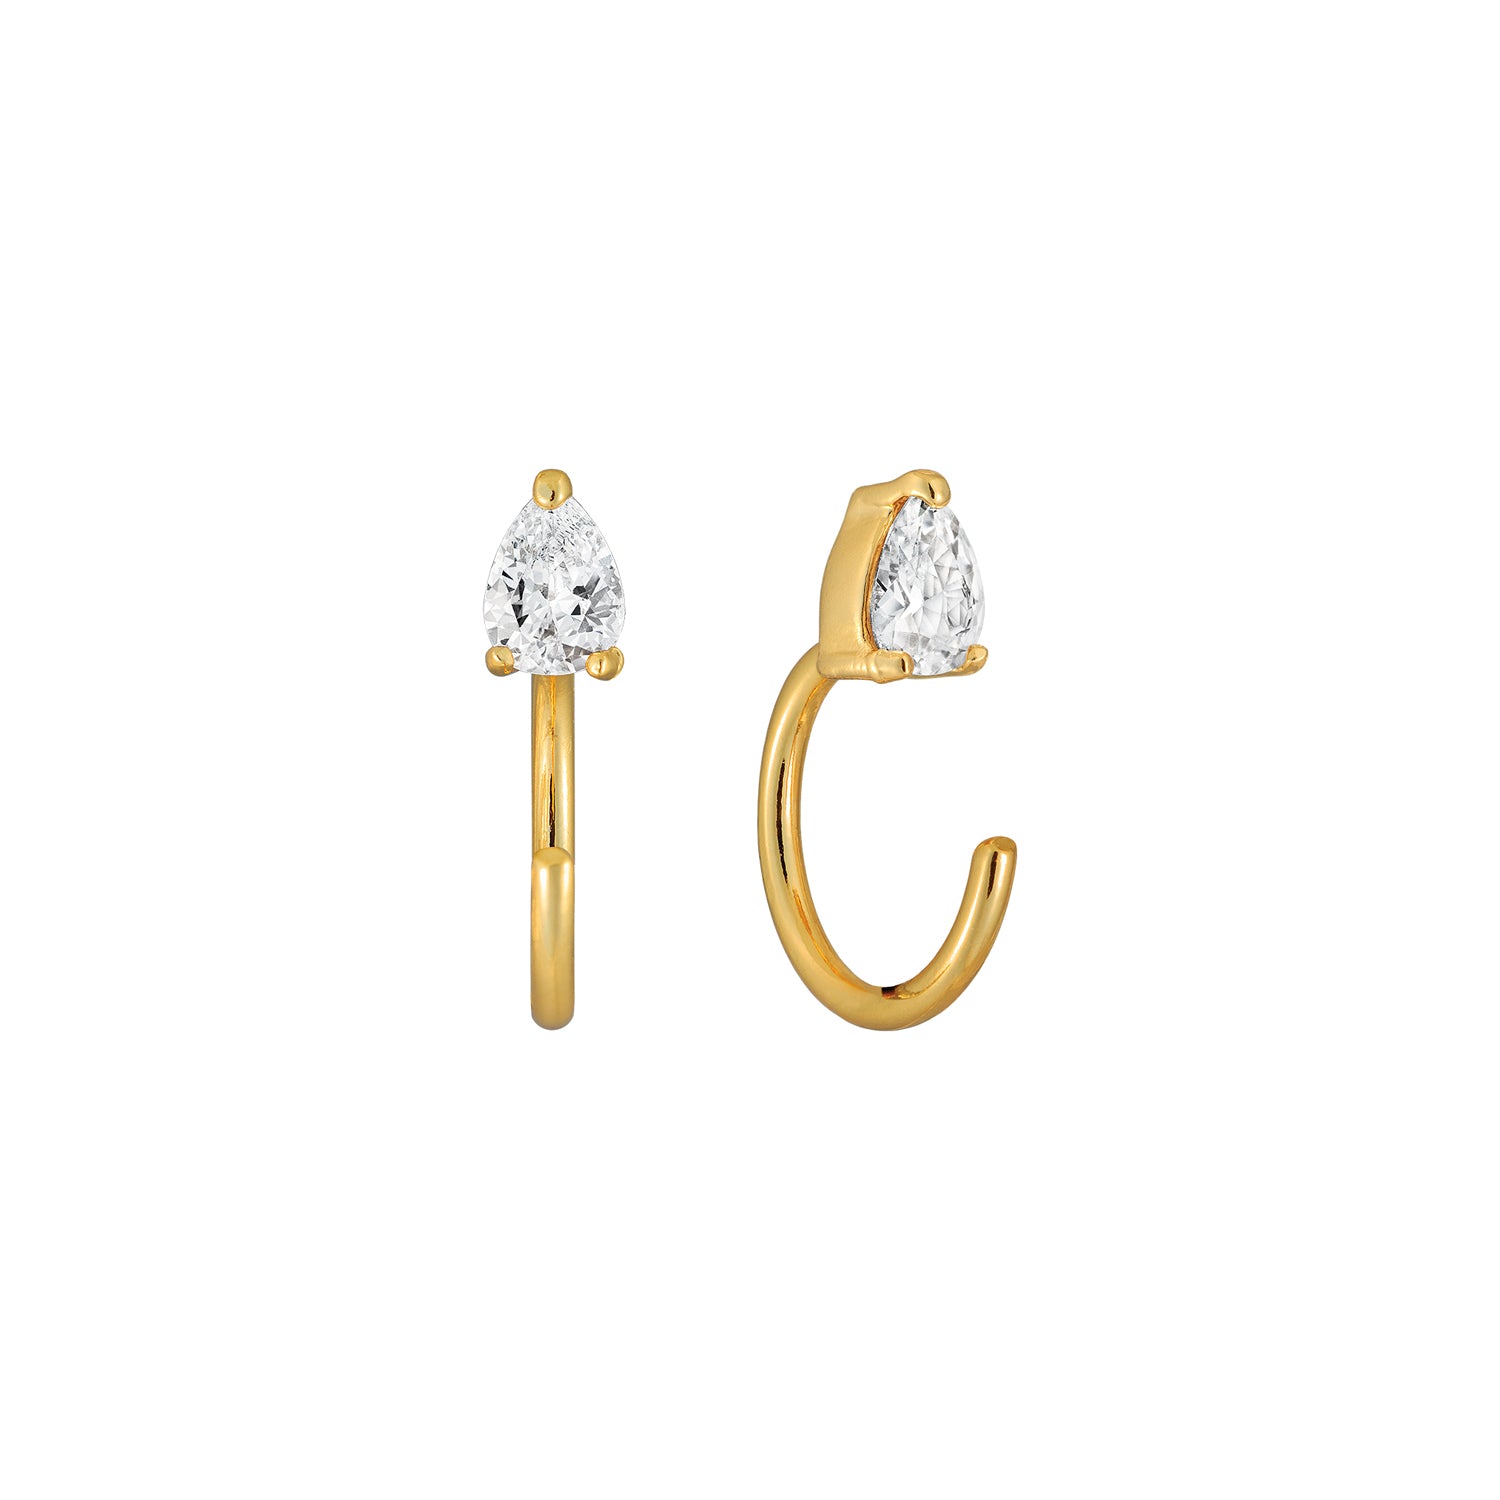 J&CO Jewellery Fall in Love Drop Earrings